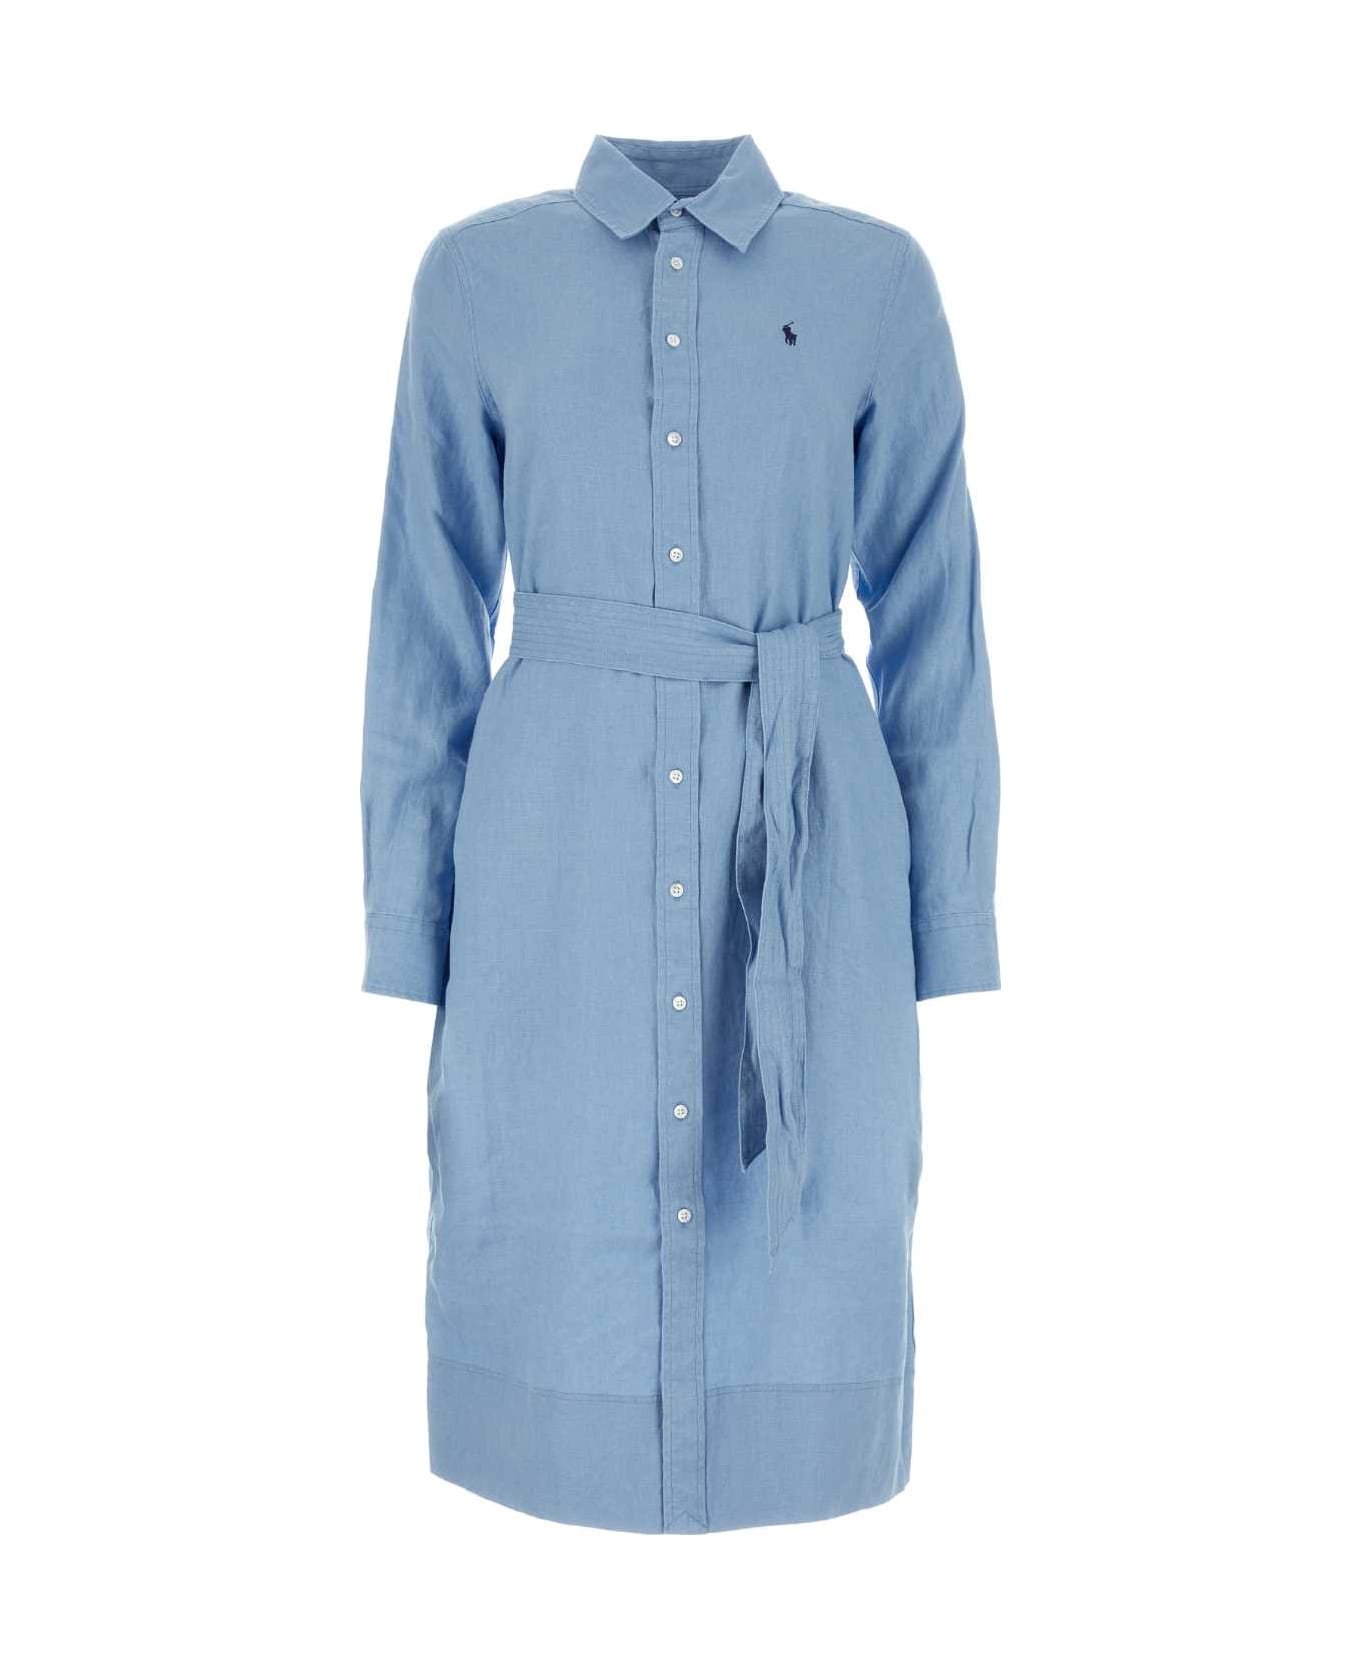 Polo Ralph Lauren Light Blue Linen Shirt Dress - CAROLINABLUE